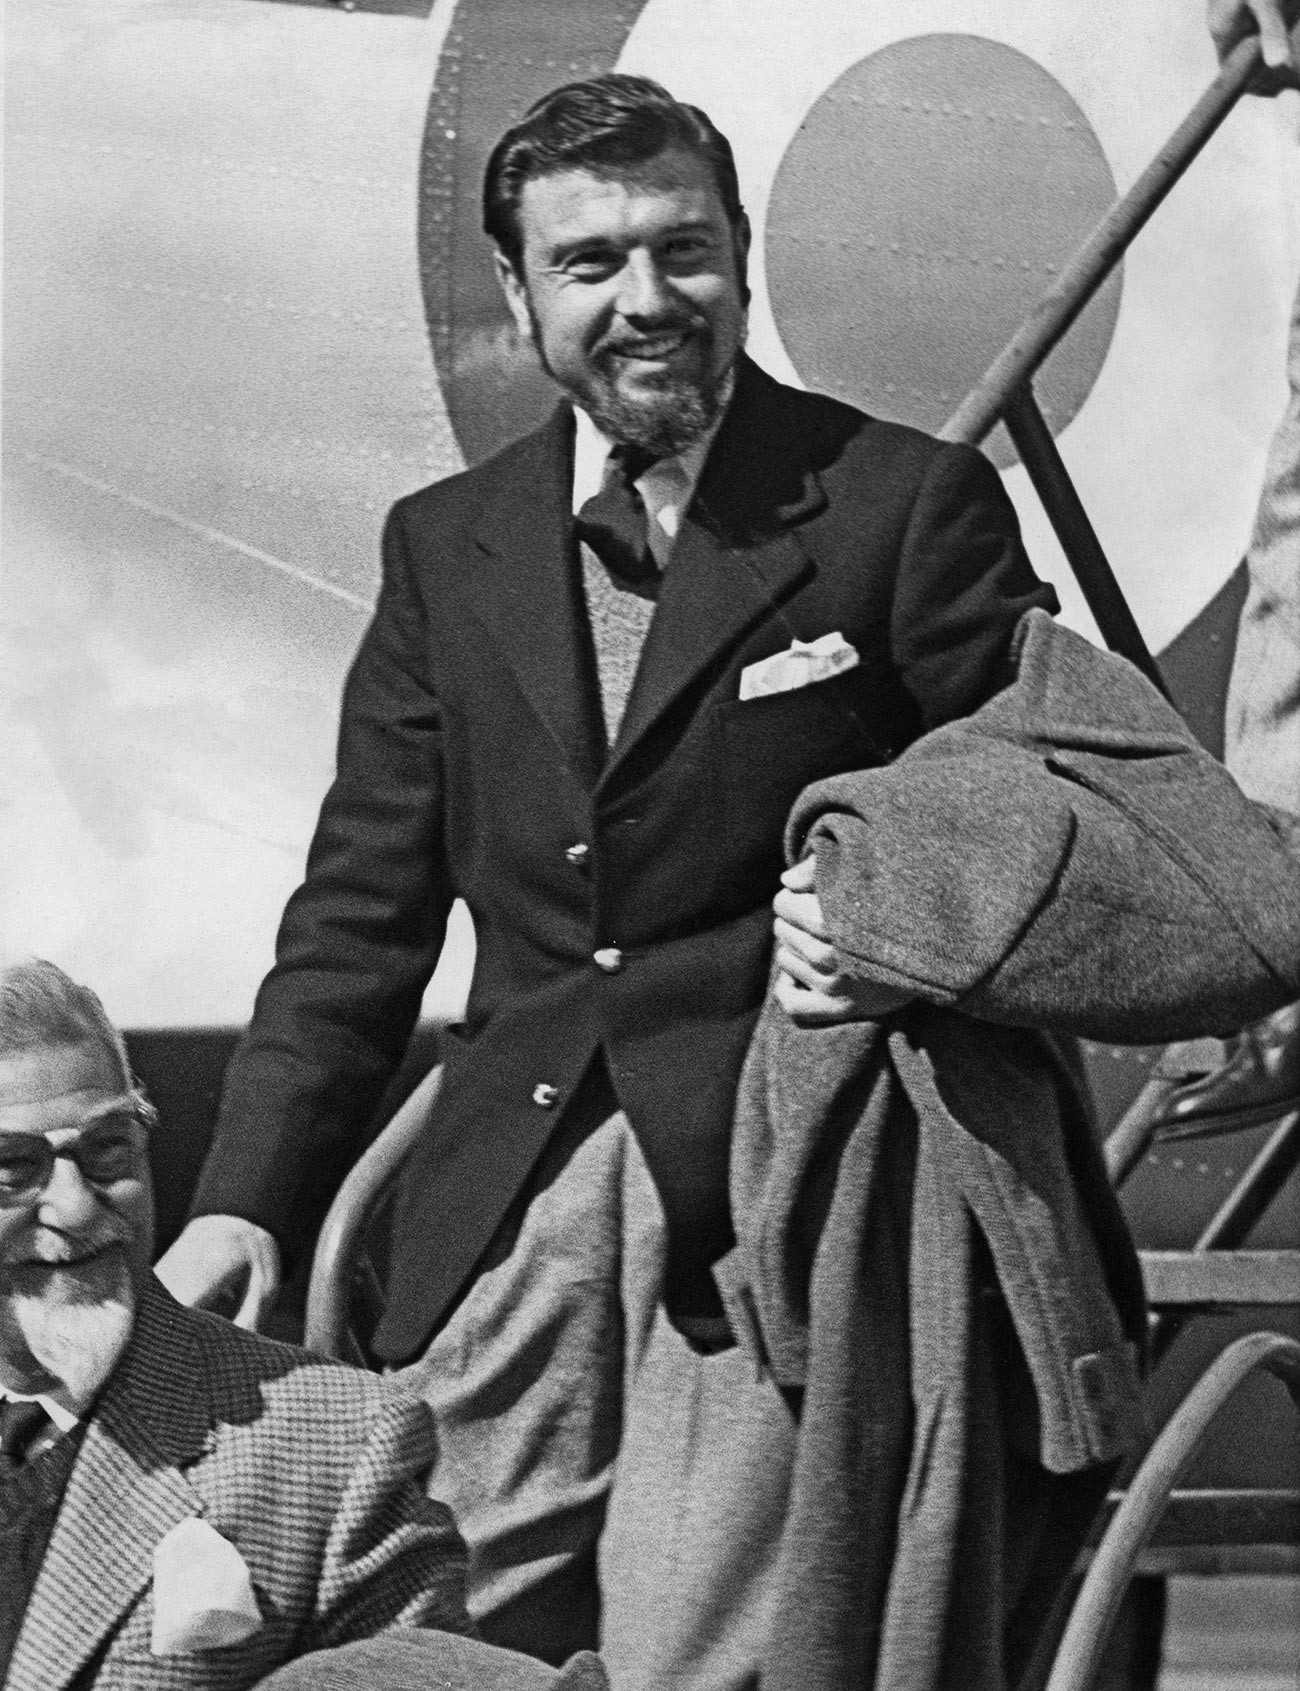 Der britische Diplomat und Spion George Blake kommt nach seiner Freilassung am 22. April 1953 in Oxfordshire an.